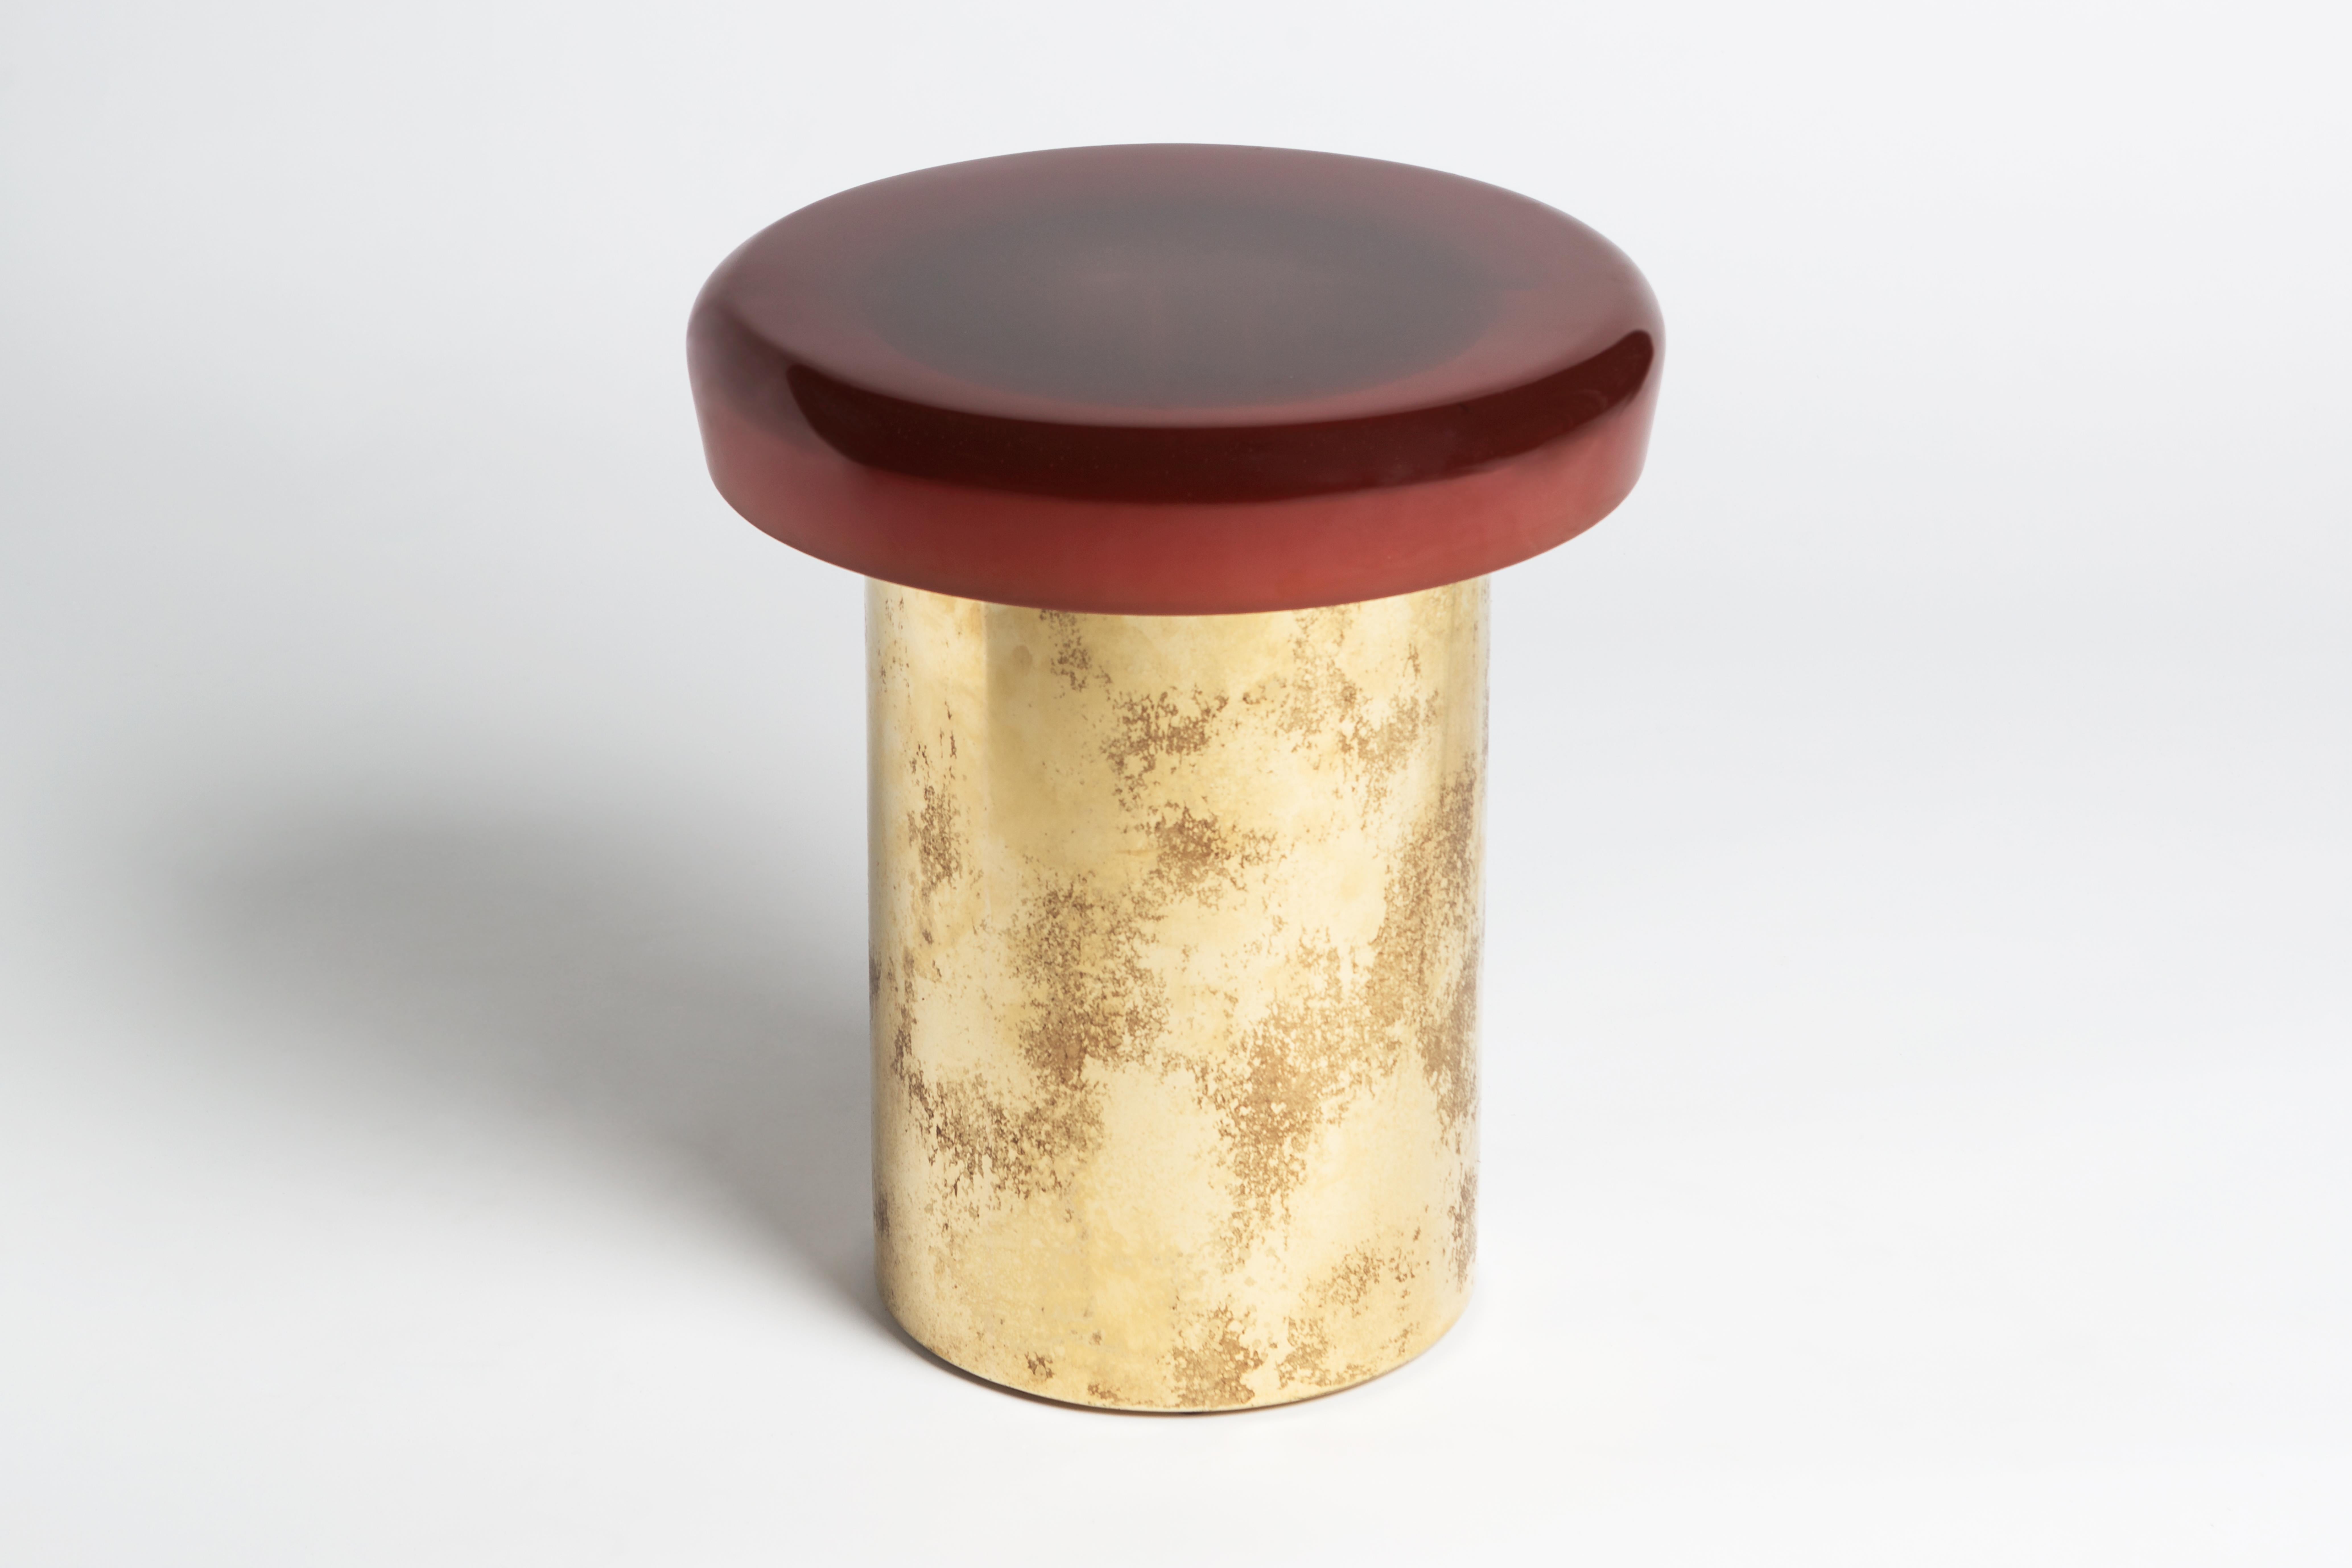 Sgabello Jade di Draga & Aurel
Dimensioni: L 40, P 40, H 46, Ø superiore 40 cm
Materiali: Resina e bronzo

Formati da una combinazione di resina riflettente e ottone massiccio, i tavolini Jade sembrano gemme preziose. La superficie è realizzata a